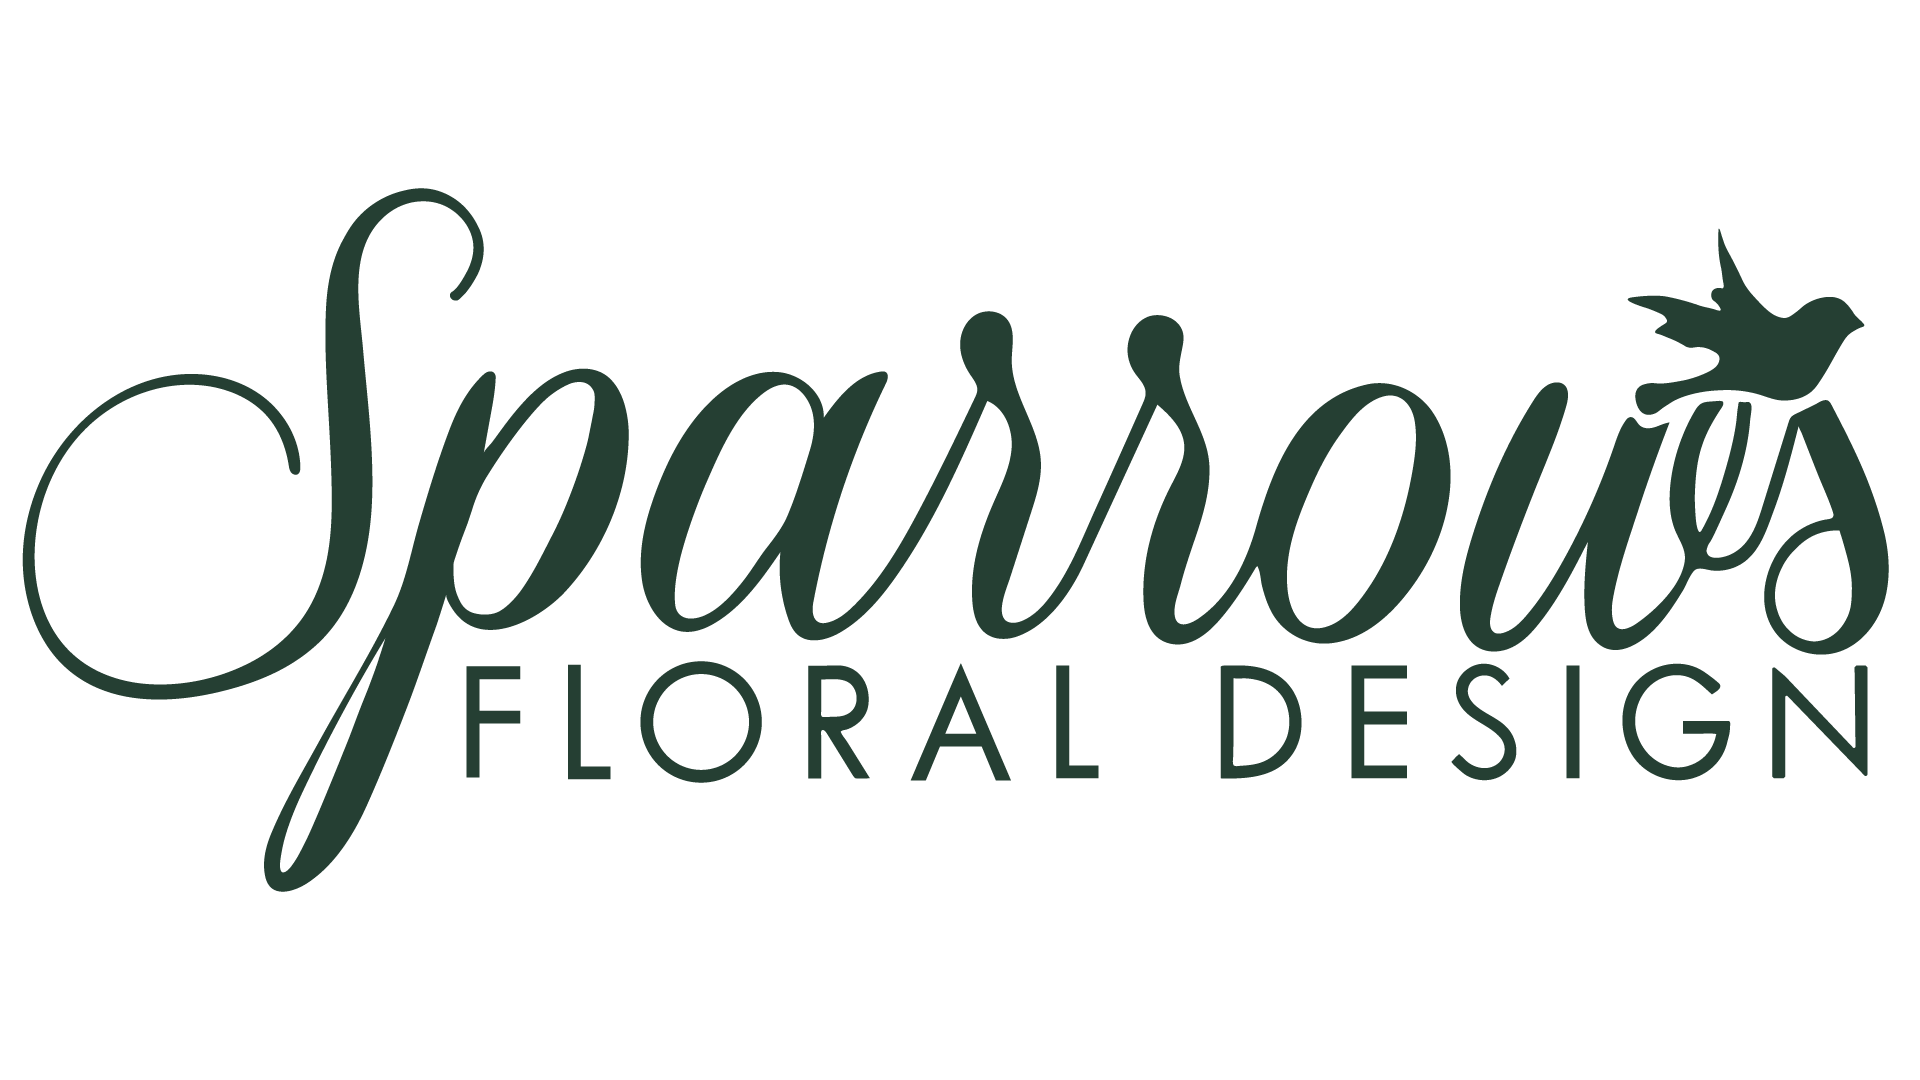 Sparrow's Floral Design